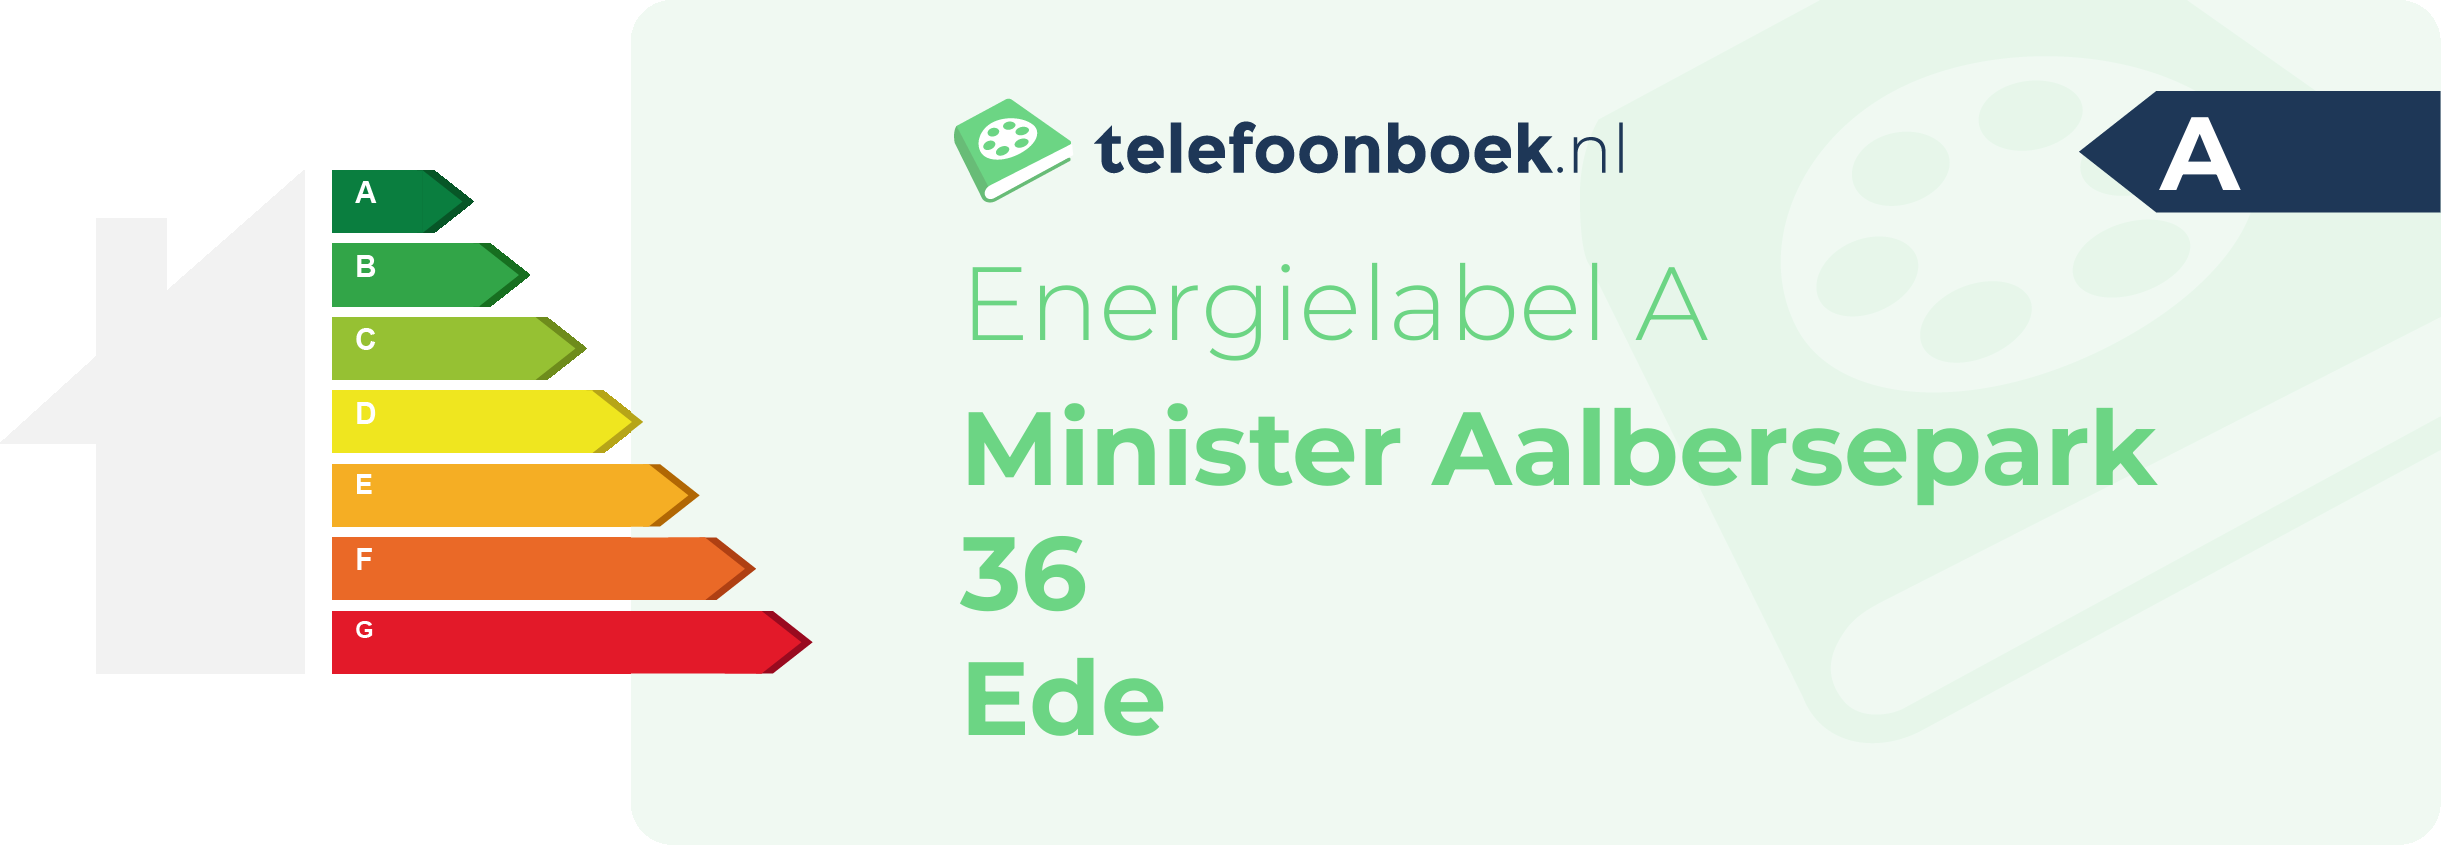 Energielabel Minister Aalbersepark 36 Ede